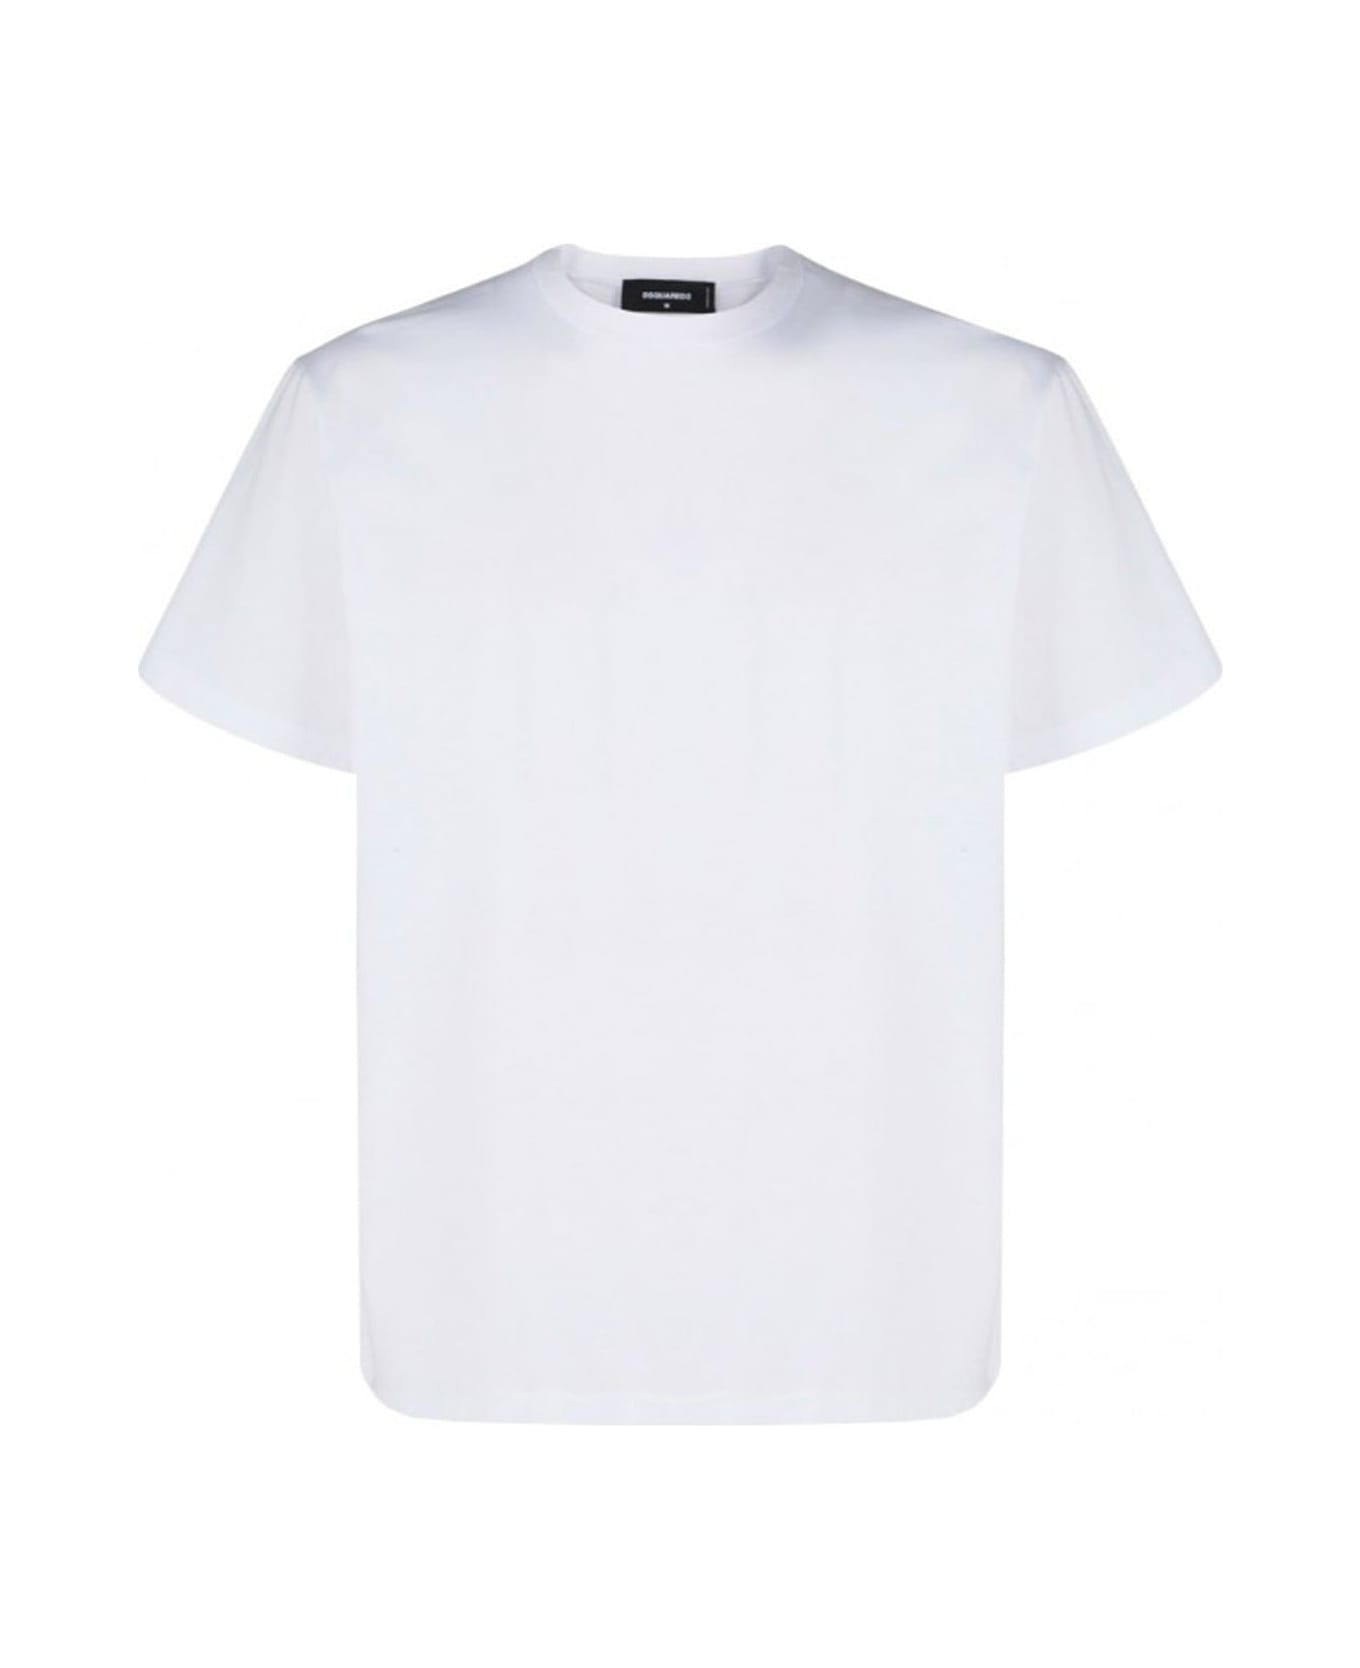 Dsquared2 Logo T-shirt - White